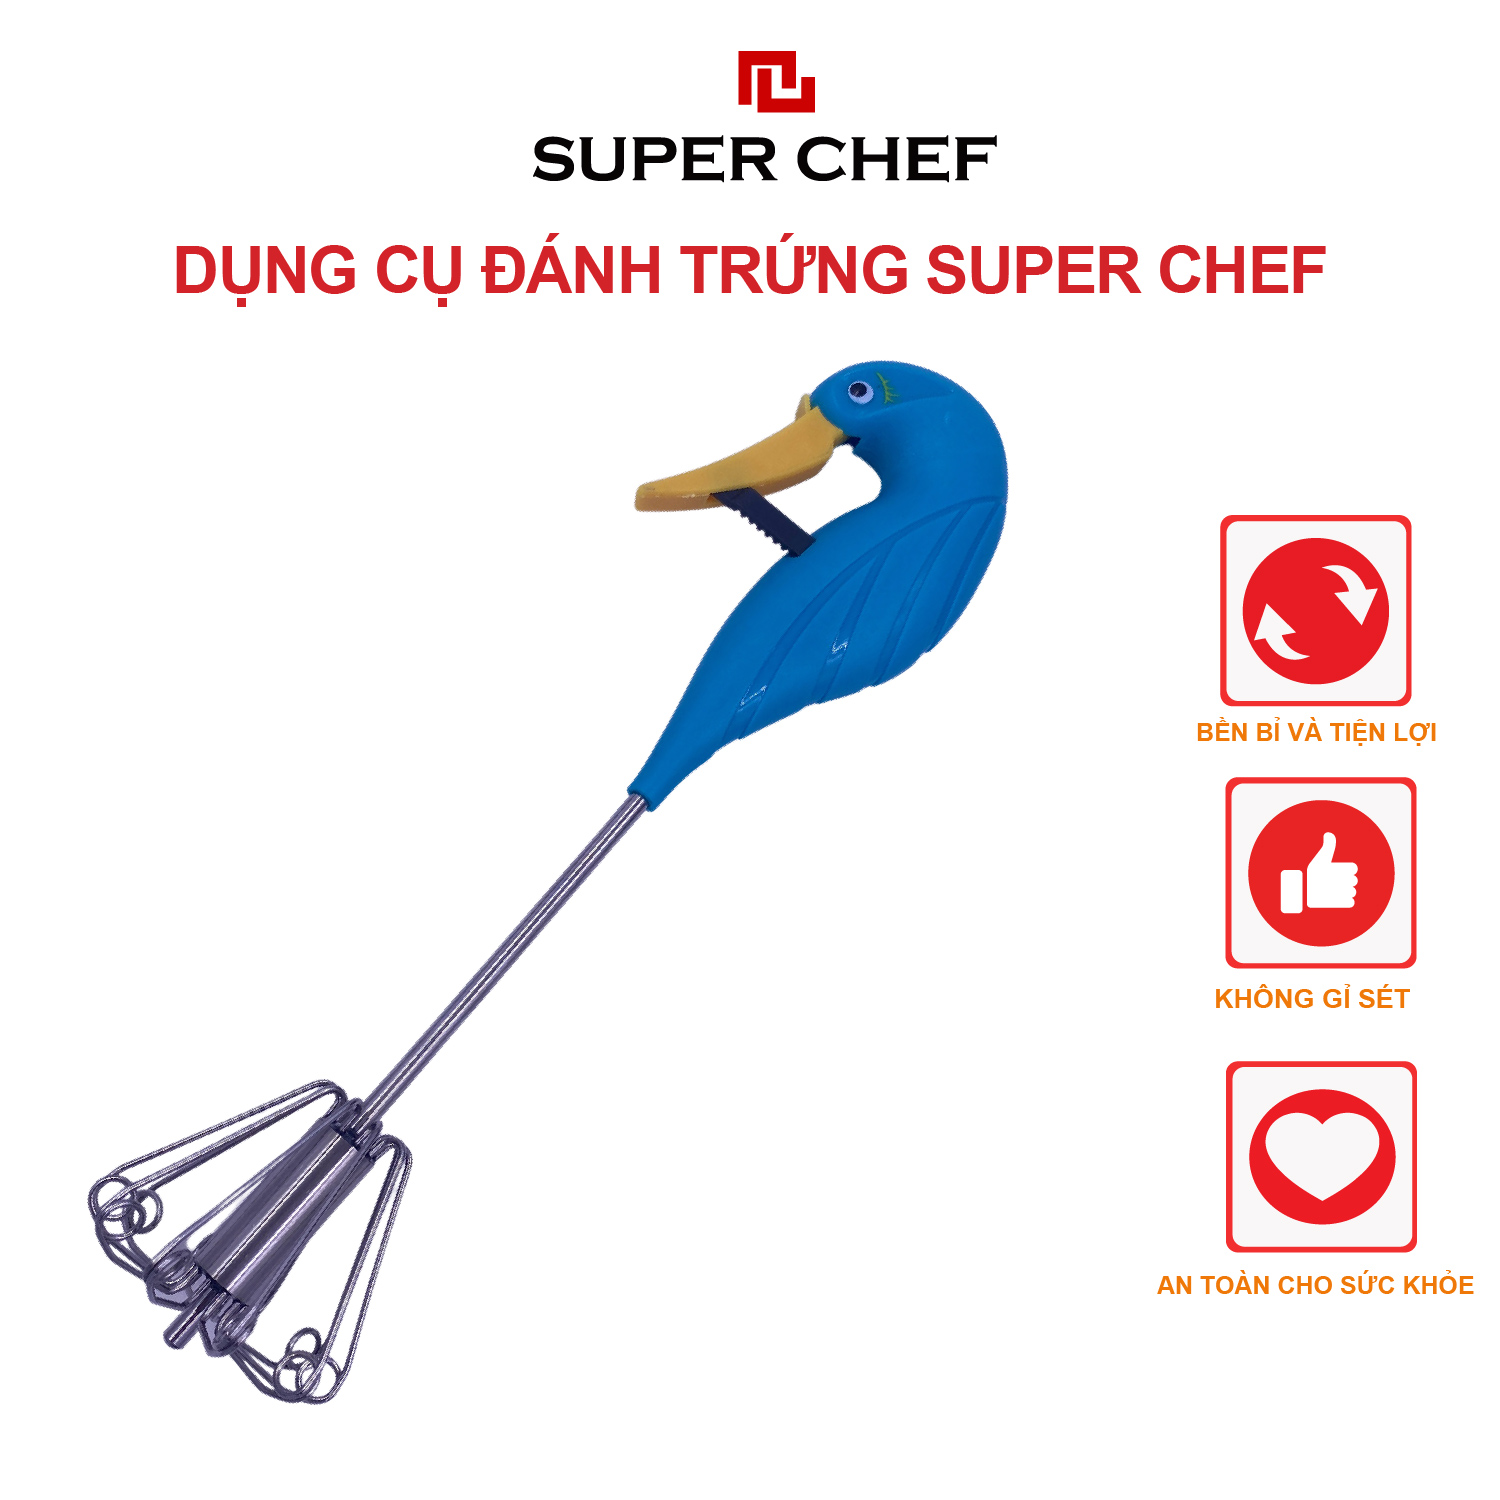 Dụng cụ đánh trứng Super Chef (SC-MFT2860) bền bỉ và tiện lợi